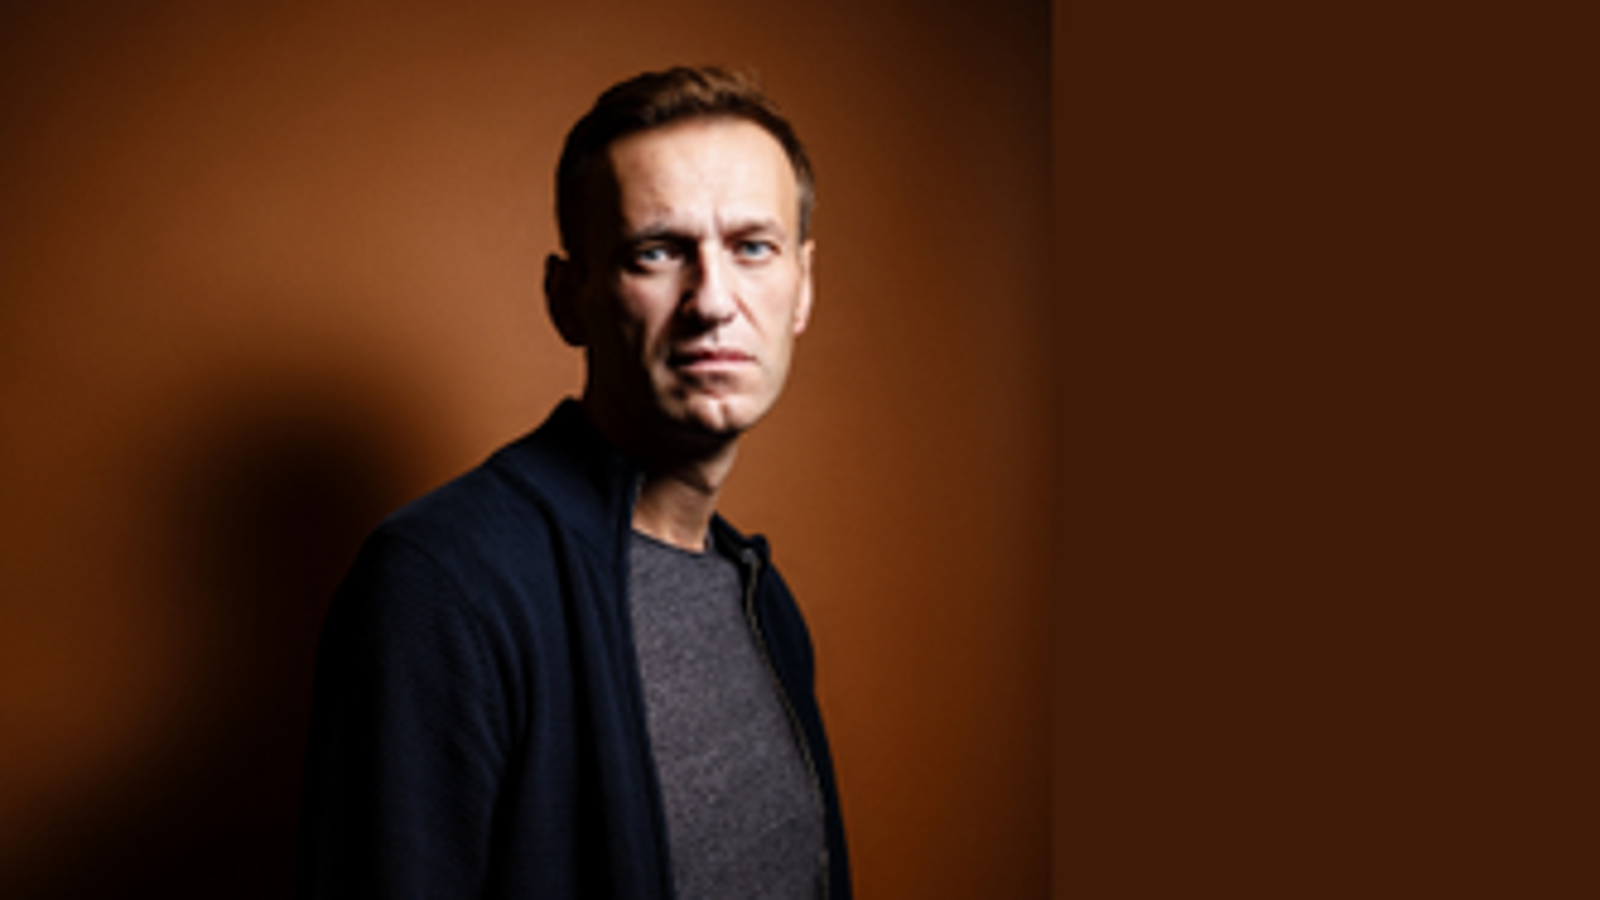 Kuvassa on Aleksei Navalny puolivartalokuvassa seisomassahieman vinottain. Hänellä on musta villatakki ja harmaa paita päällään. Tausta on ruskea.